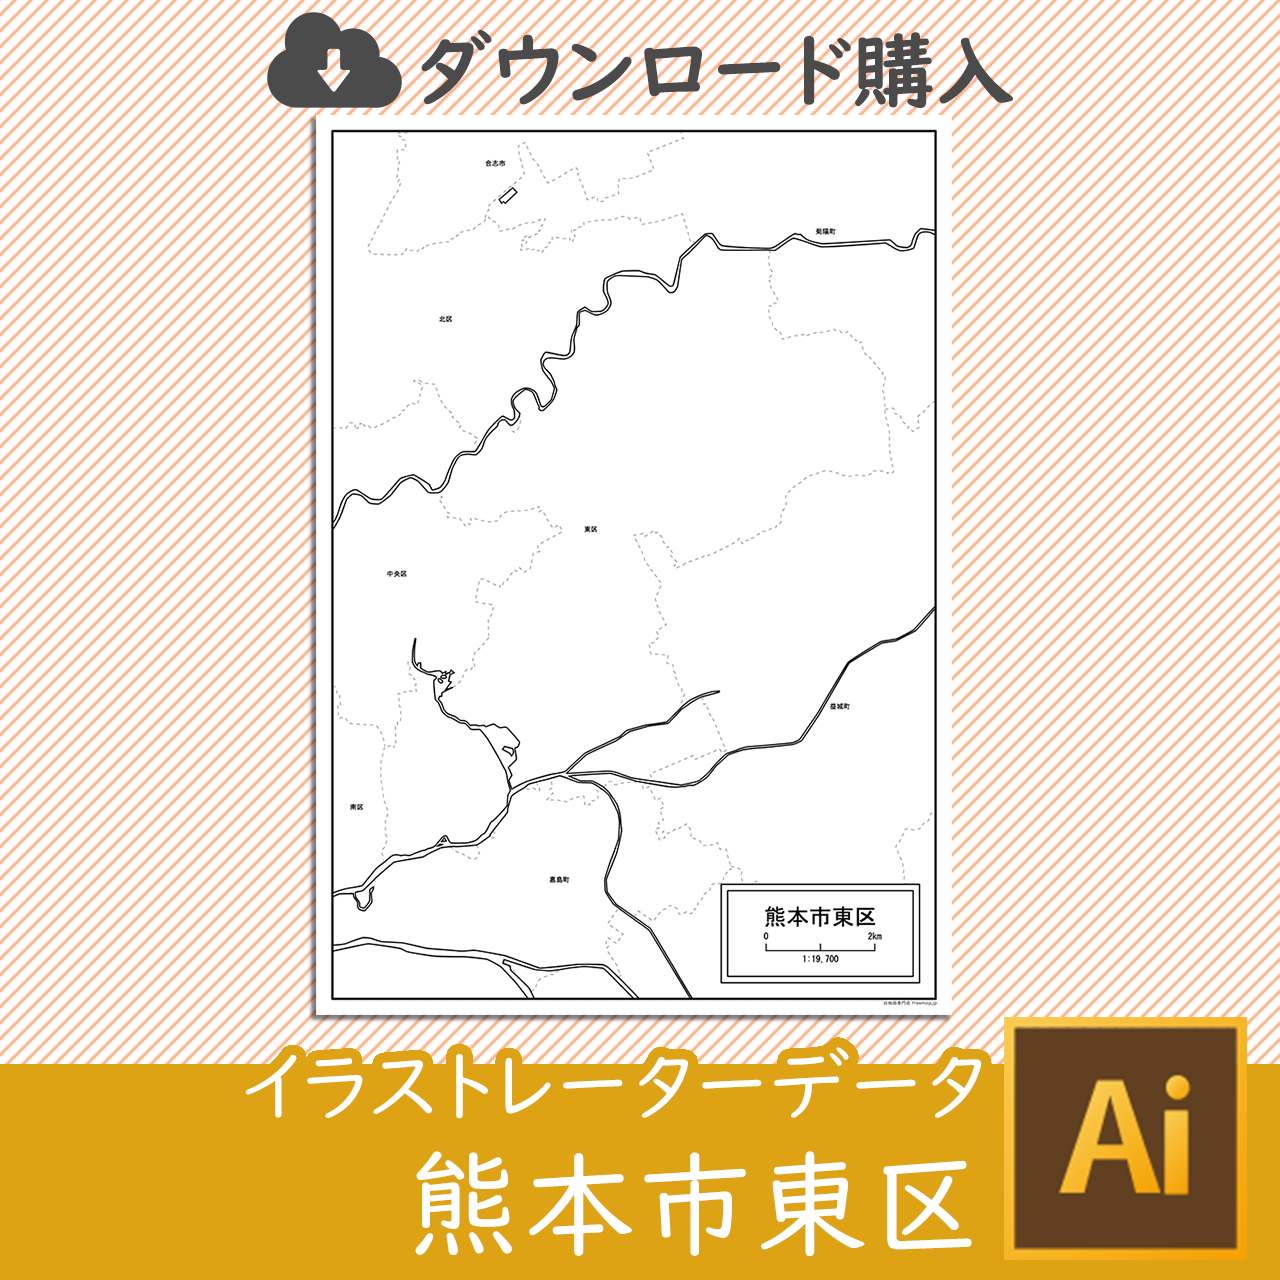 熊本市と5区セットのサムネイル画像